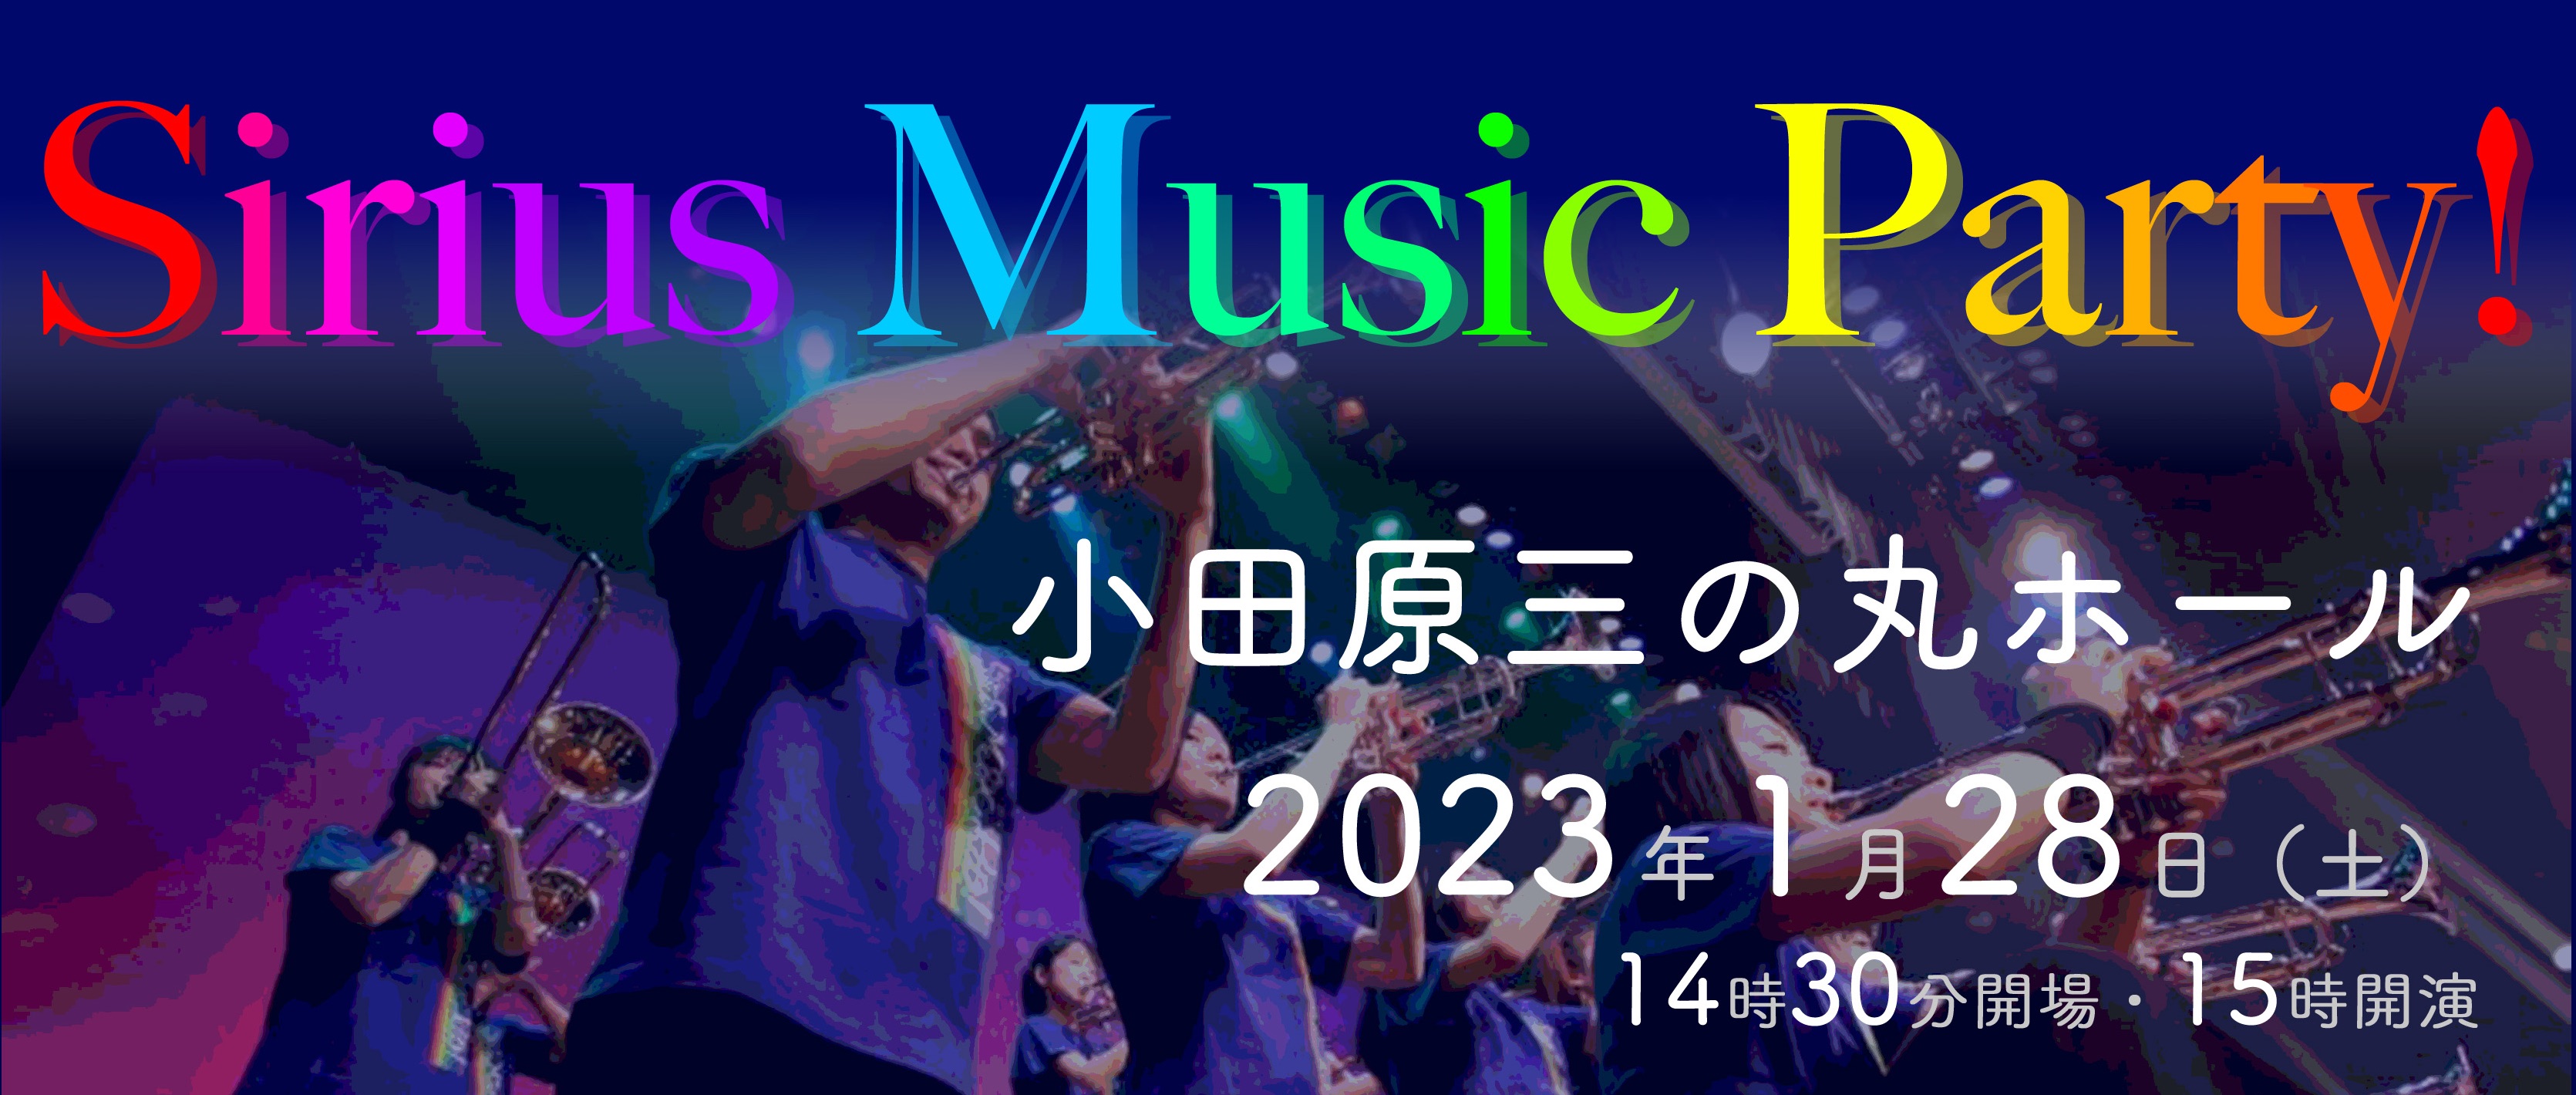 2022 Sirius Music Party! in ODAWARA